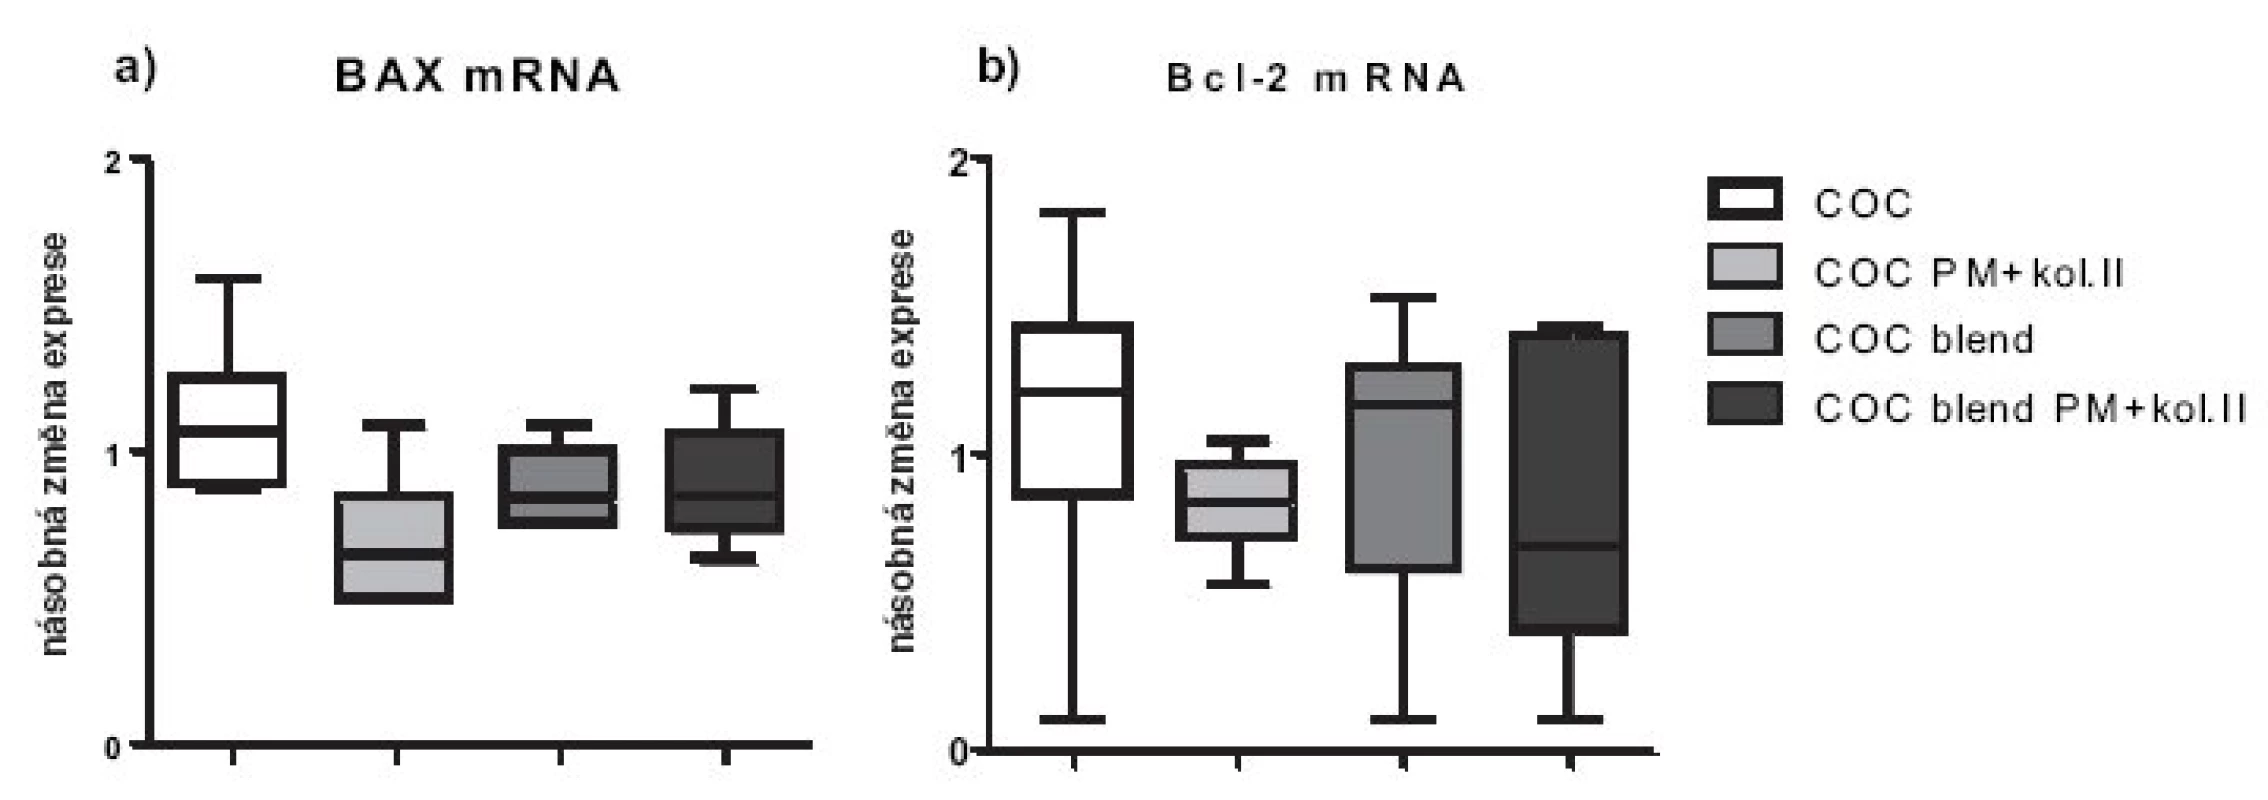 Relativní genové exprese na úrovni mRNA pro apoptotické molekuly BAX a Bcl-2. Exprese jsou vztaženy relativně k negativní kontrole (chondrocyty pěstované v jamce s médiem bez přítomnosti materiálu), která byla stanovena jako K=1.